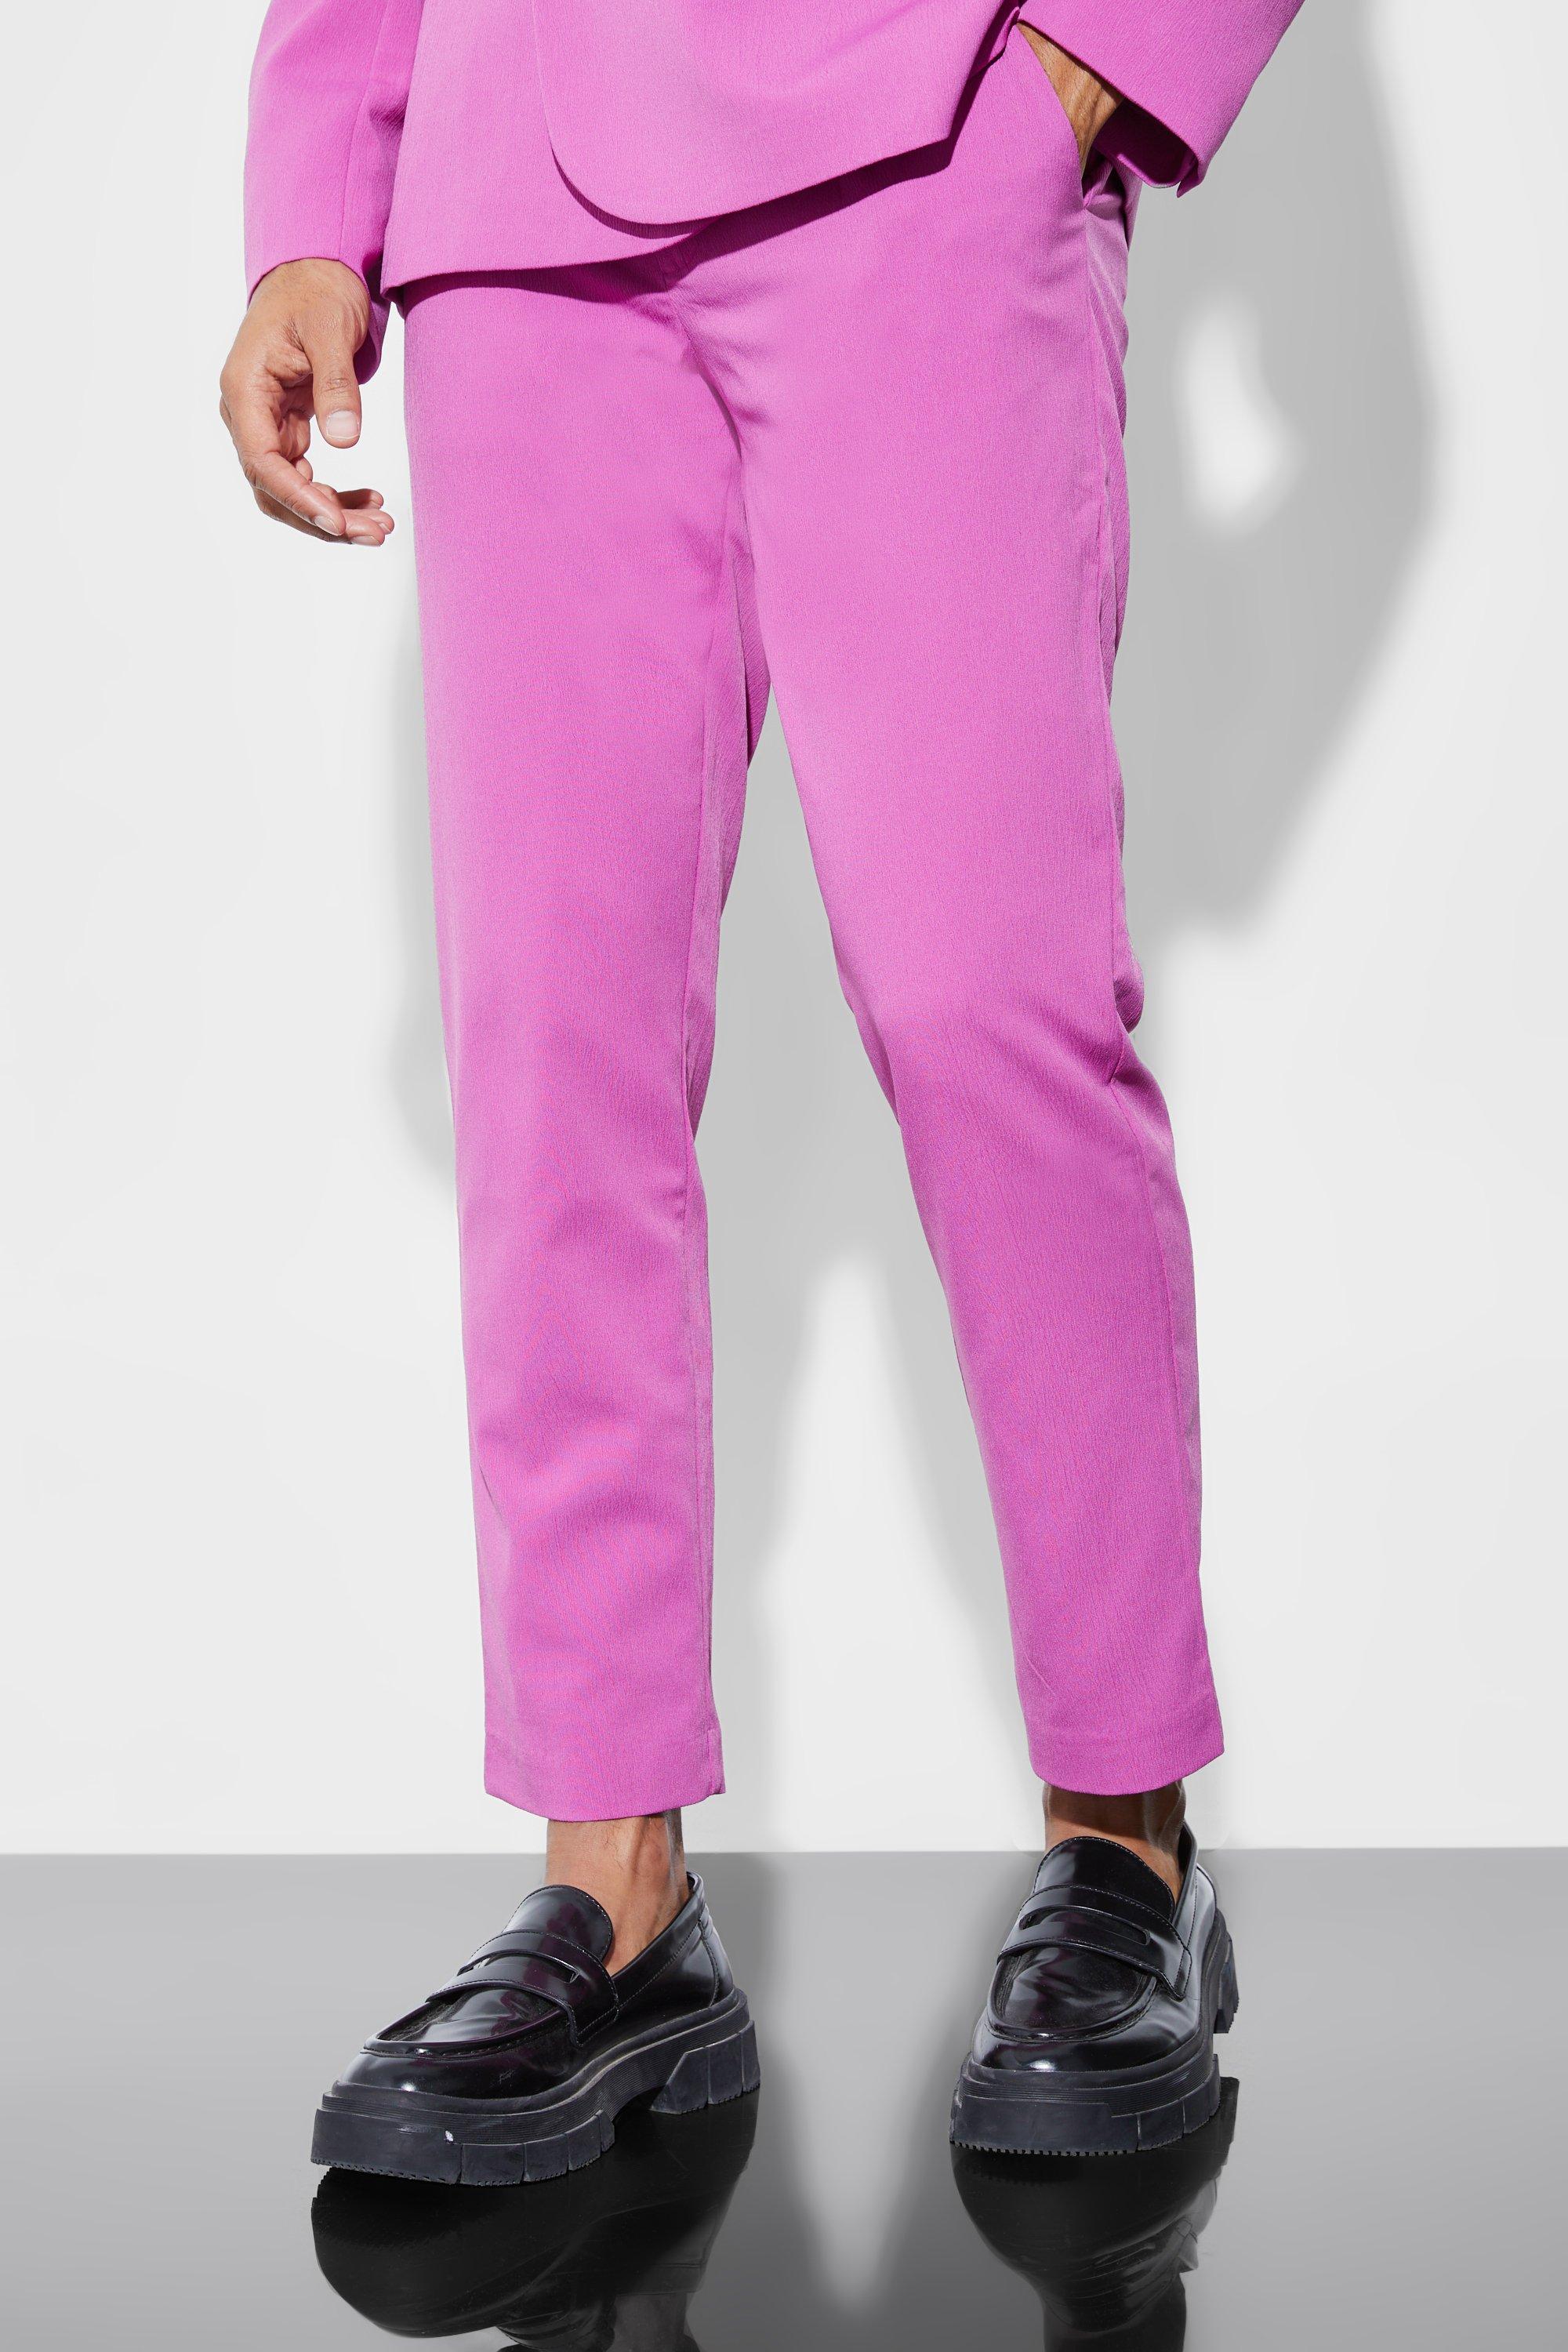 pantalon de costume court plissé homme - rose - 30r, rose